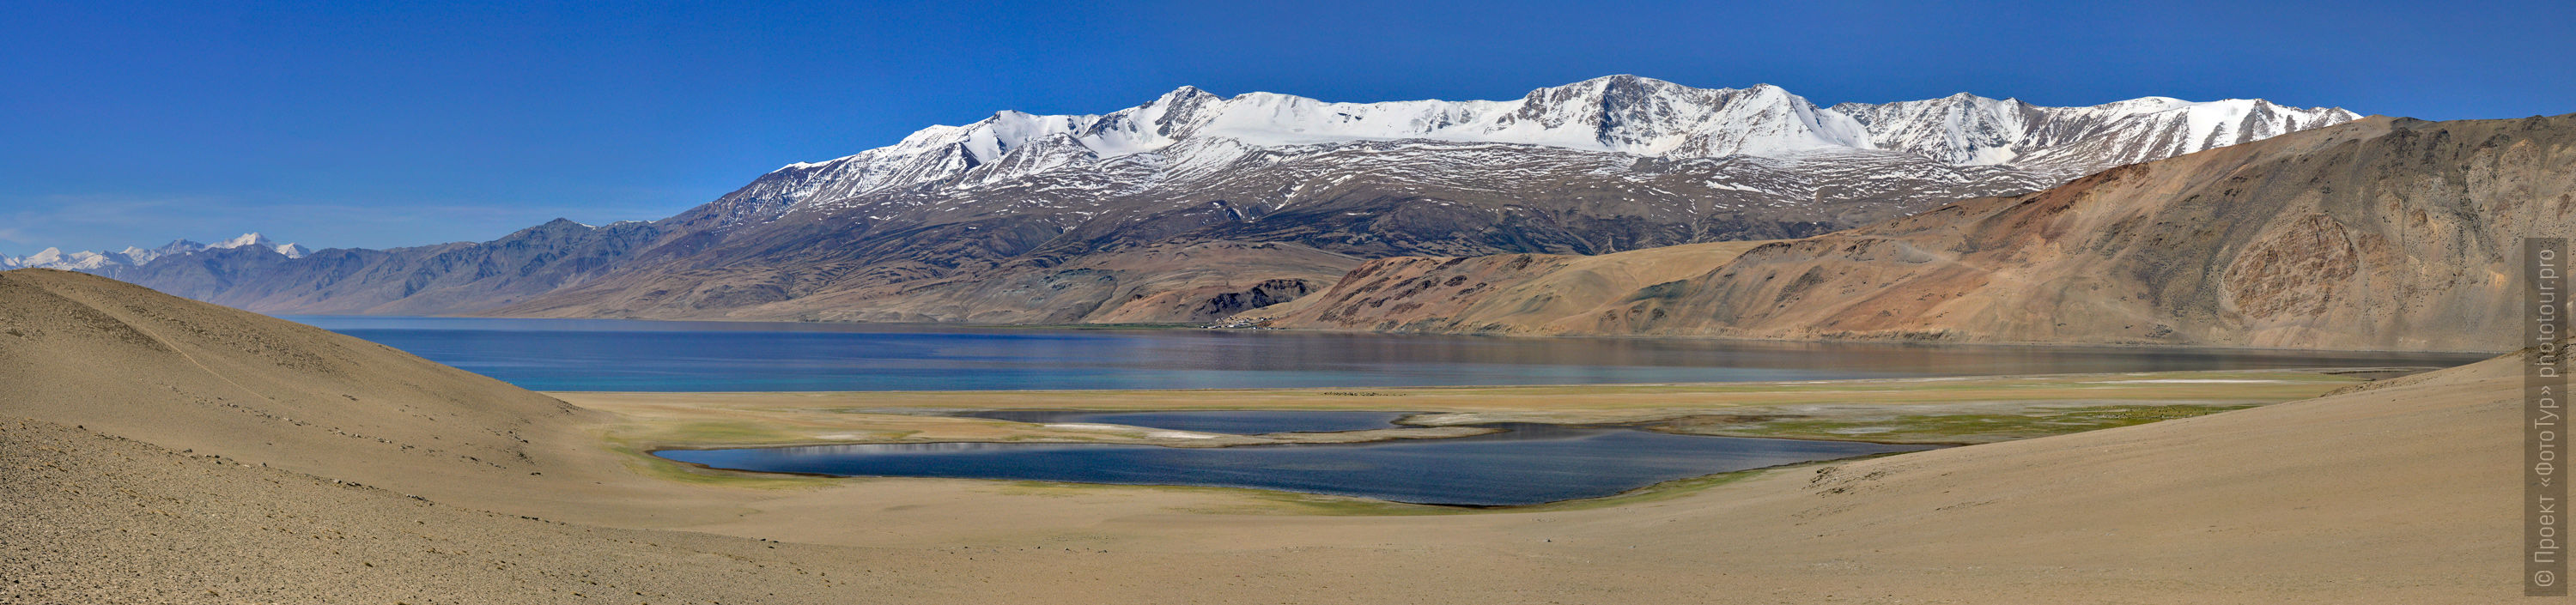 Фотопанорама озера Цо Морири, фототурв Гималаи, Ладакх, Малый Тибет.